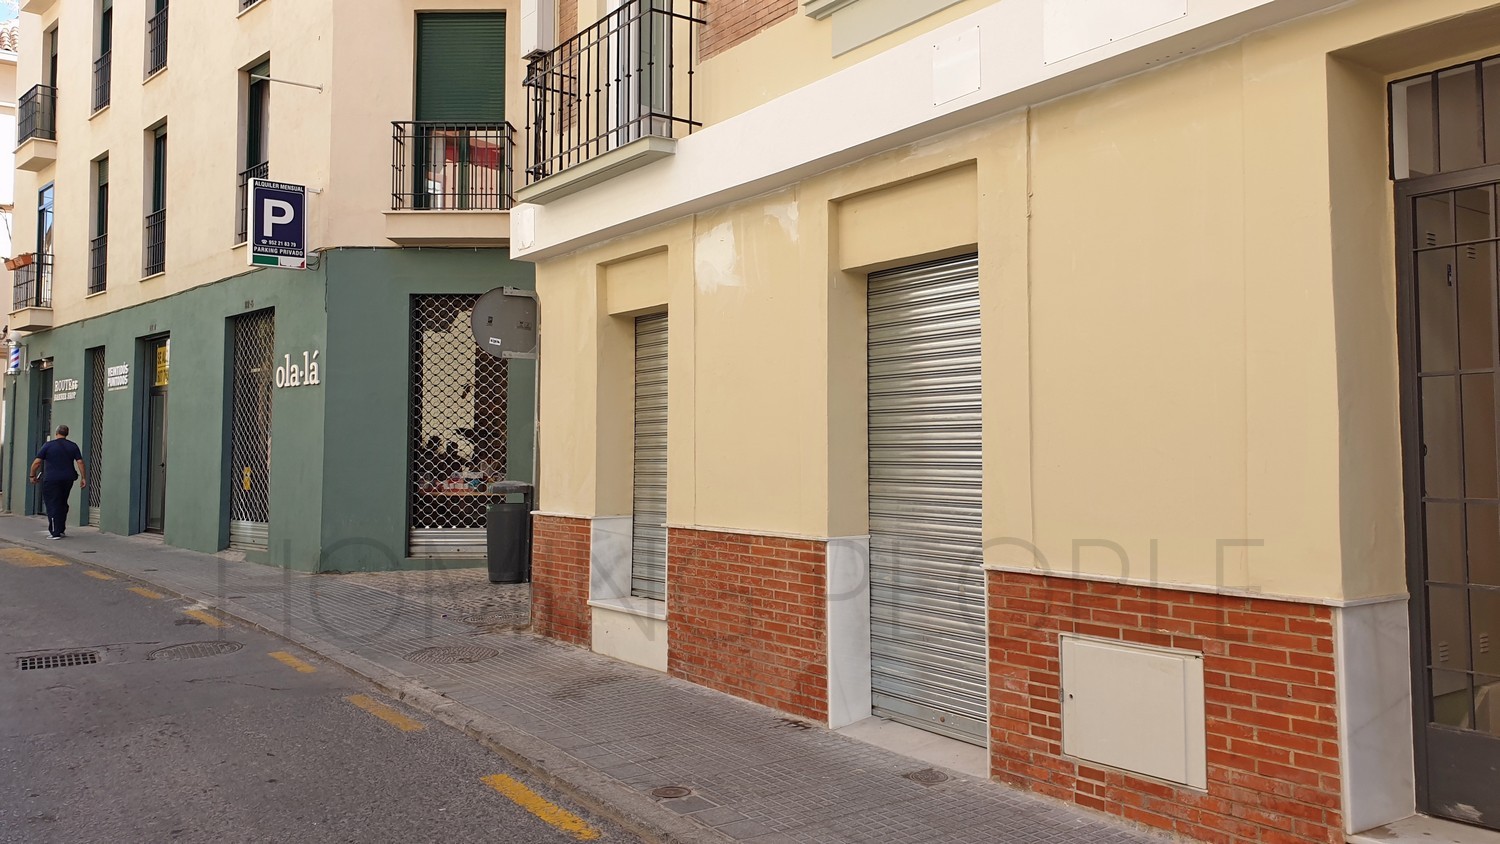 Local en el centro de Málaga, a dos minutos a pie de Uncibay